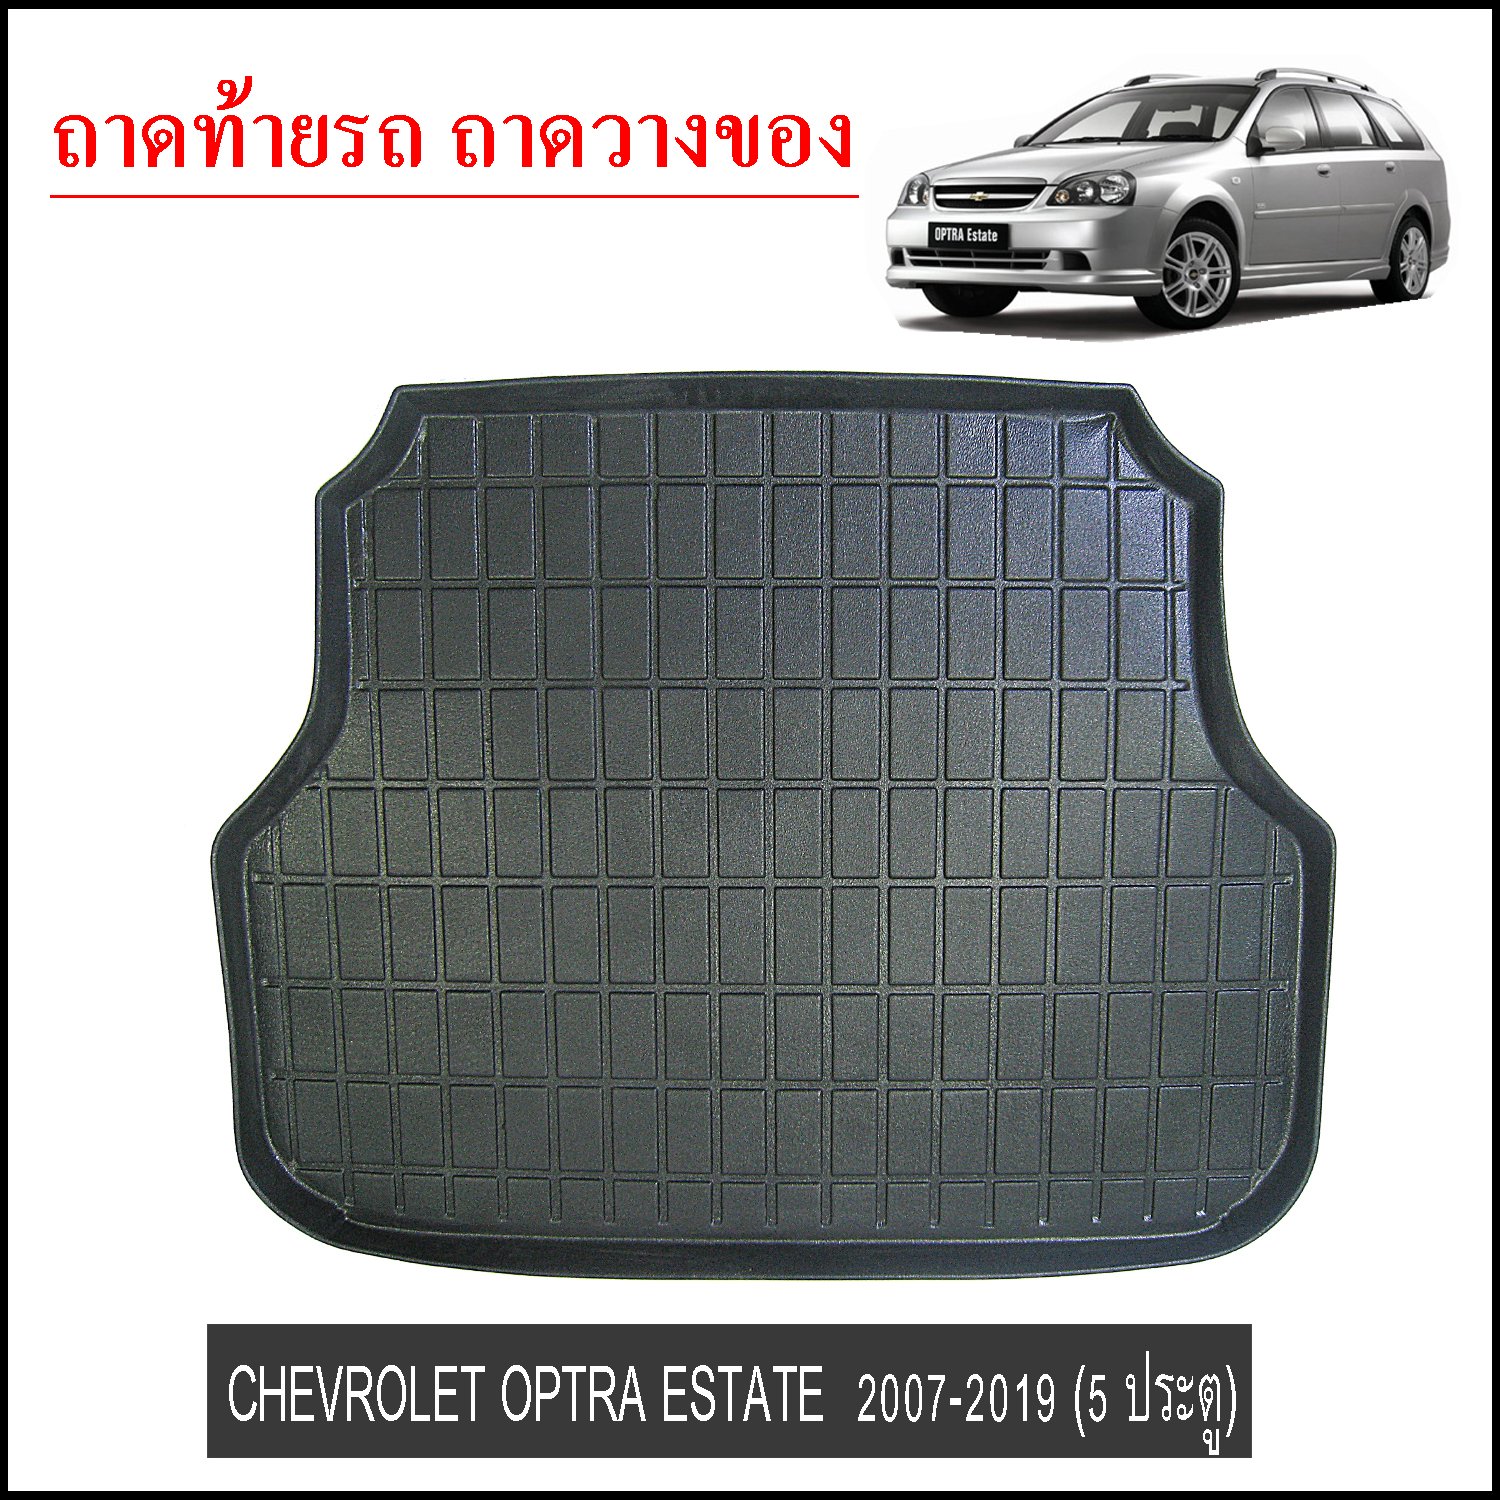 ถาดท้ายวางของ Chevrolet Optra Estate 2007-2019